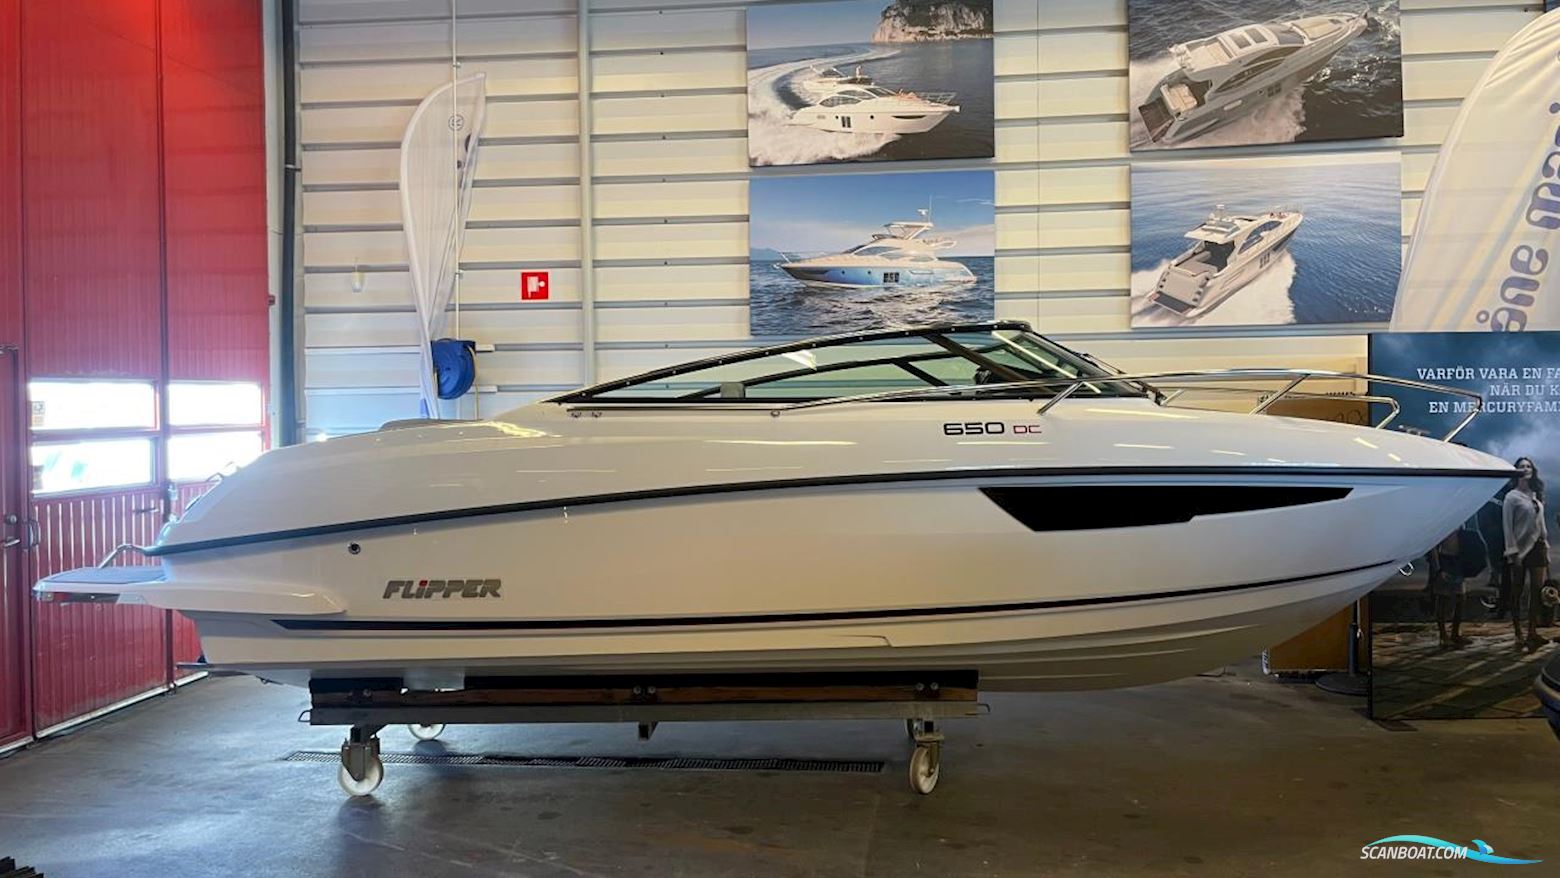 Flipper 650 DC Motorbåt 2023, med Mercury motor, Sverige